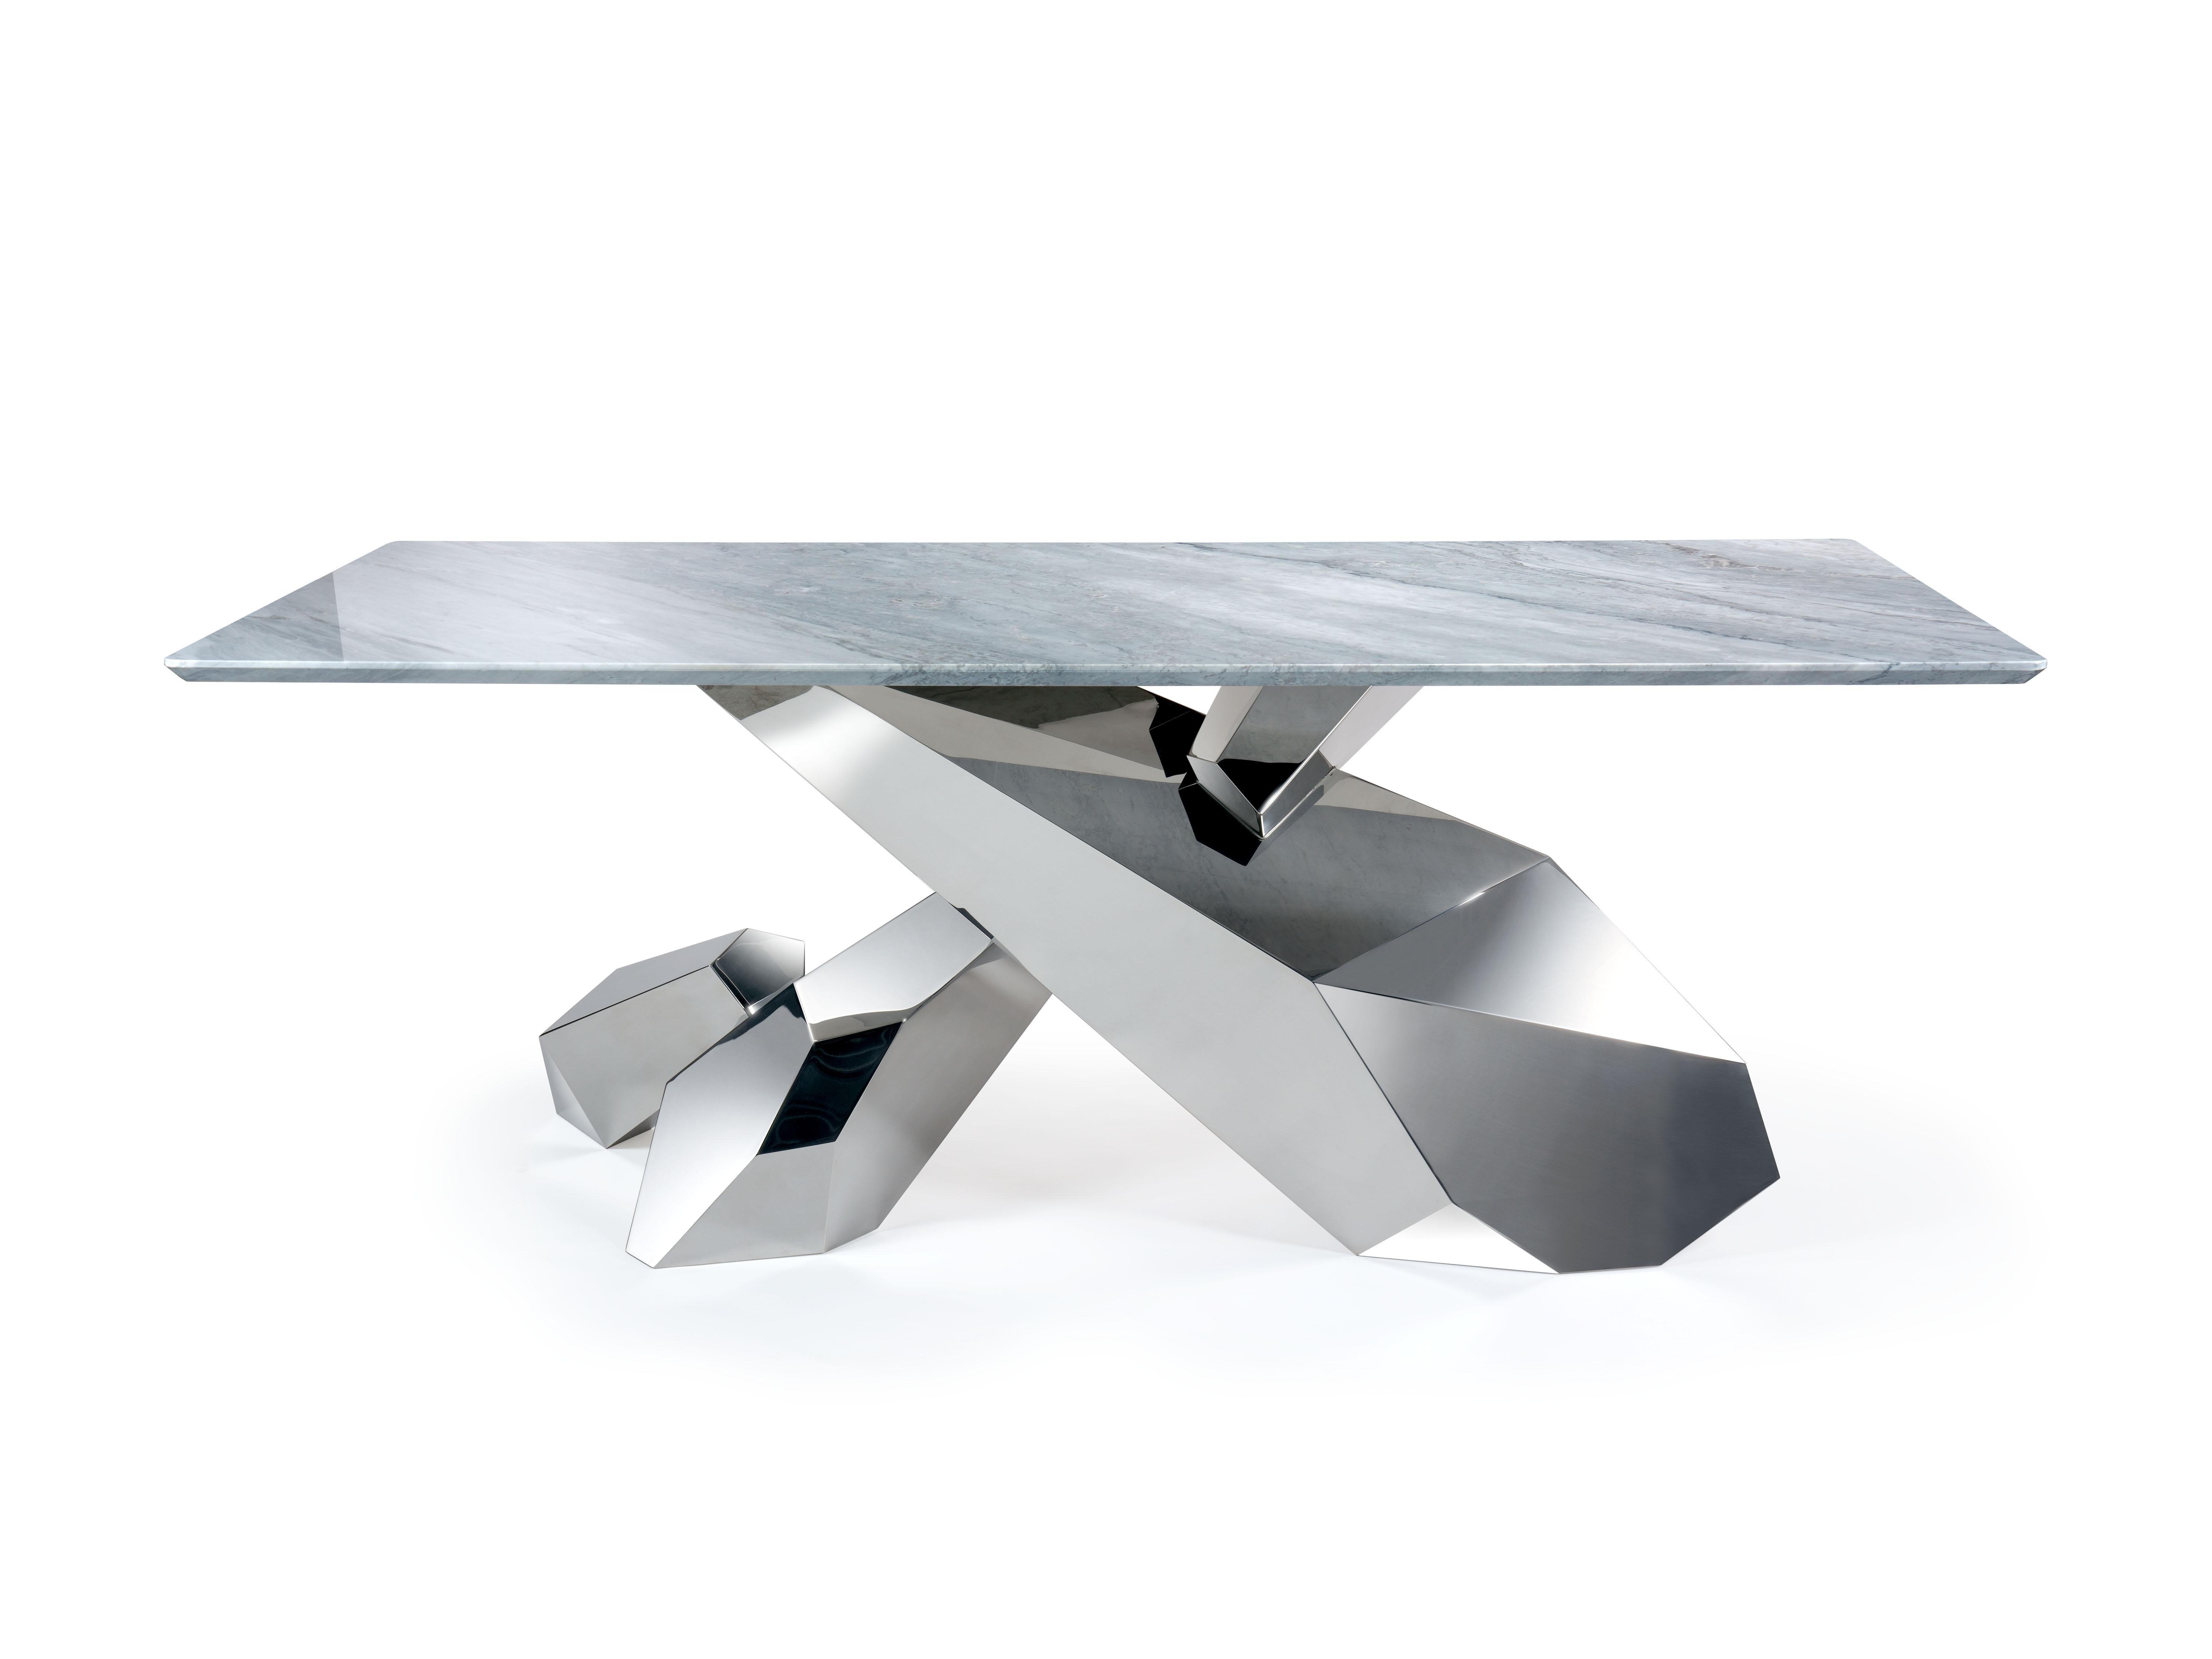 La table 'Steele' est un bureau important avec une structure en acier inoxydable poli miroir et un plateau en marbre gris Versylis. La structure s'inspire d'une formation de cristaux de Gallium et est réalisée entièrement à la main, de la soudure au